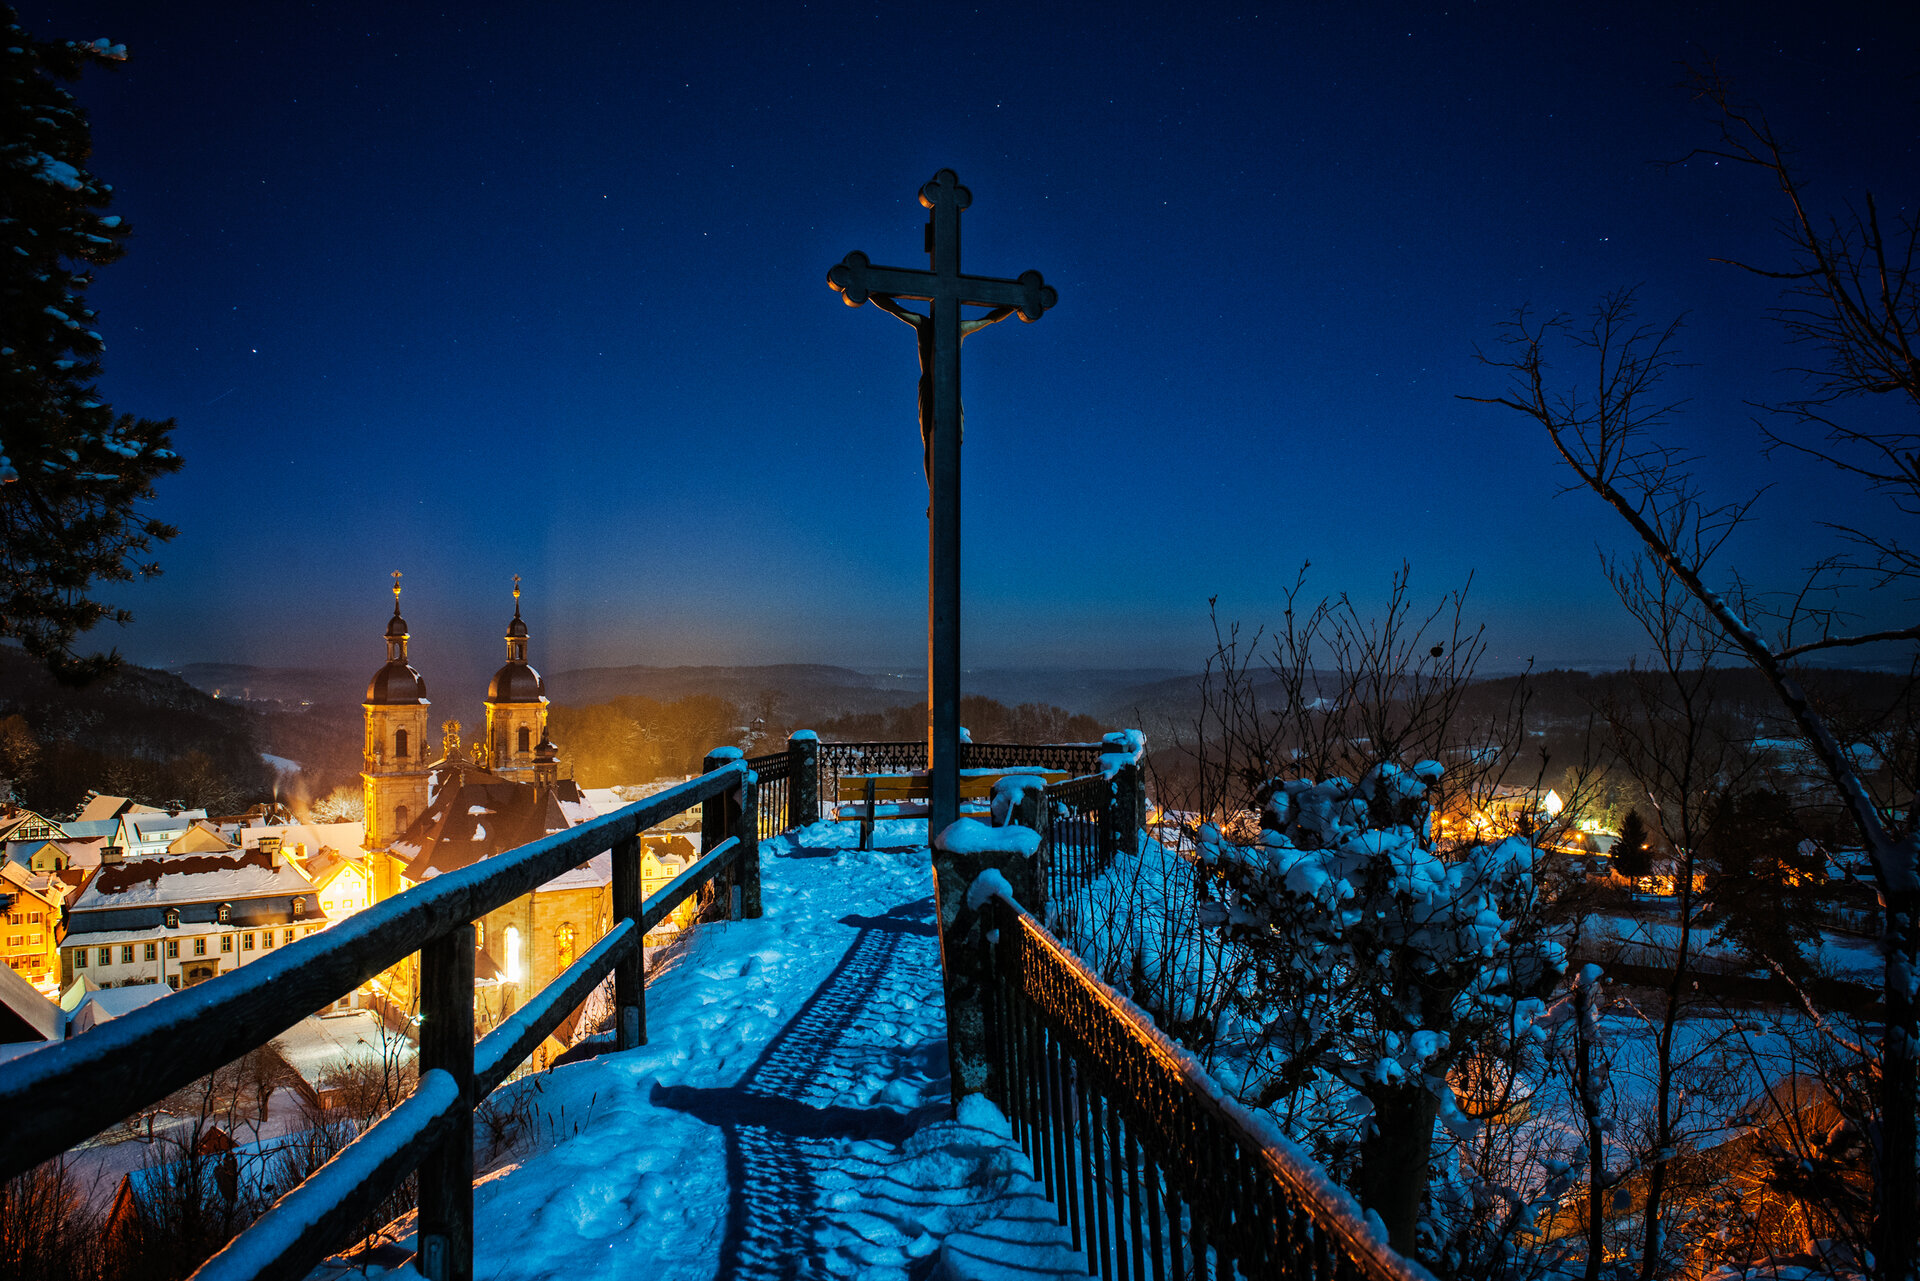 Ein schmaler, verschneiter Weg, der von Geländern eingefasst ist führt zu einem Aussichtspunkt, auf dem ein Keuz steht. Unten, im Hintergrund, steht eine Kirche. Der dunkelblaue Himmel ist sternenklar.